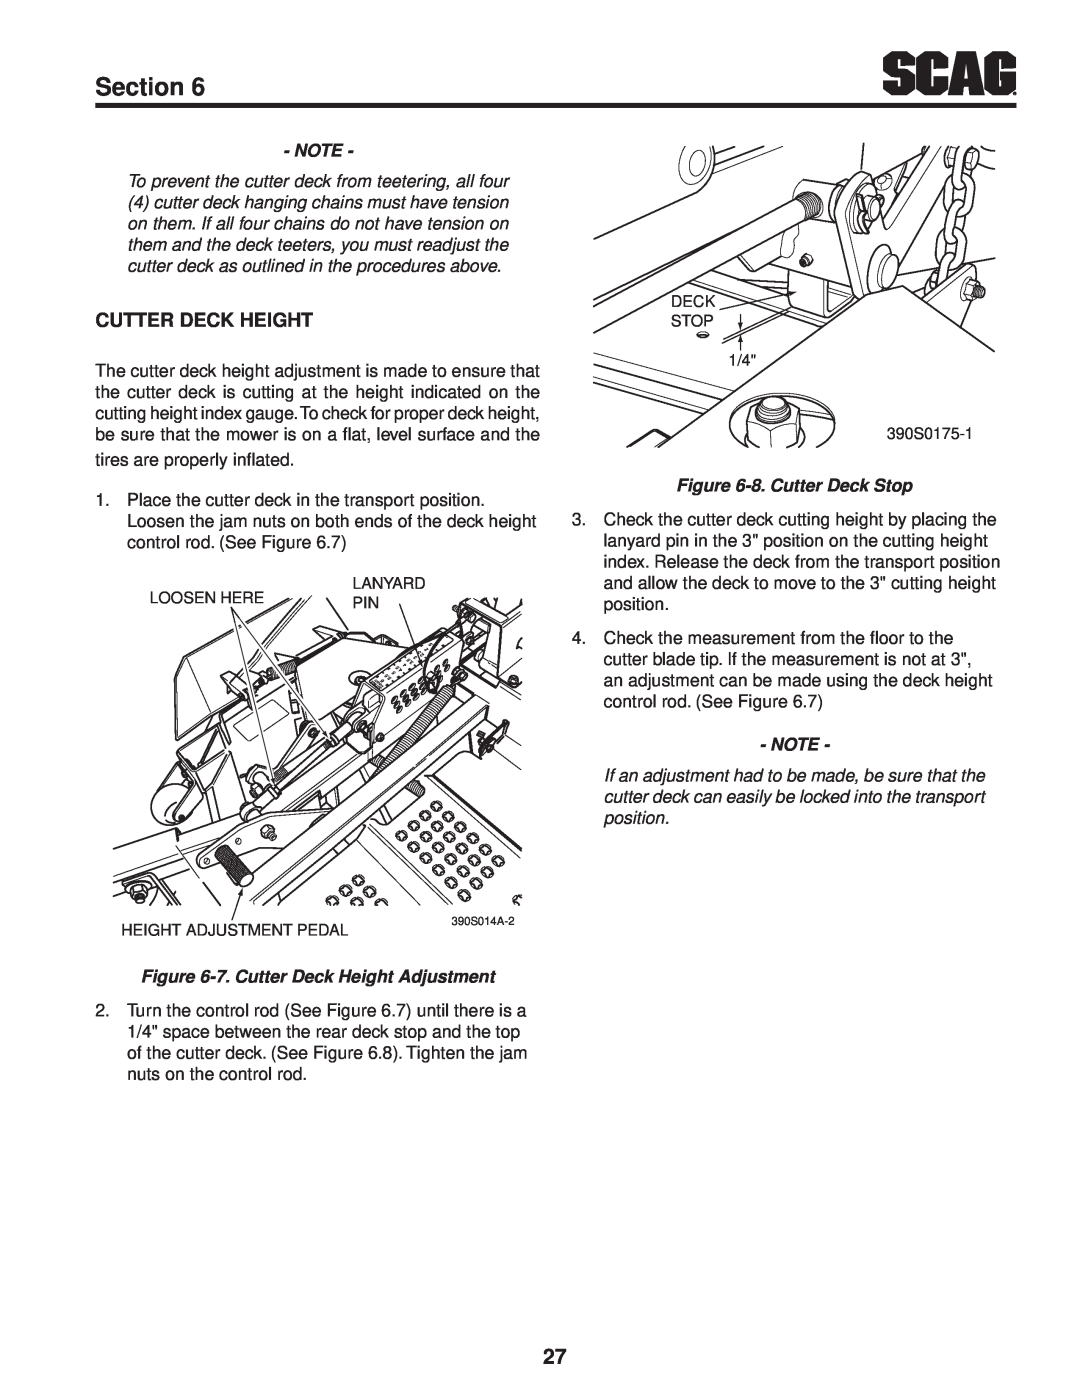 Scag Power Equipment STT61V-31EFI-SS manual Section, 8. Cutter Deck Stop, 7. Cutter Deck Height Adjustment 